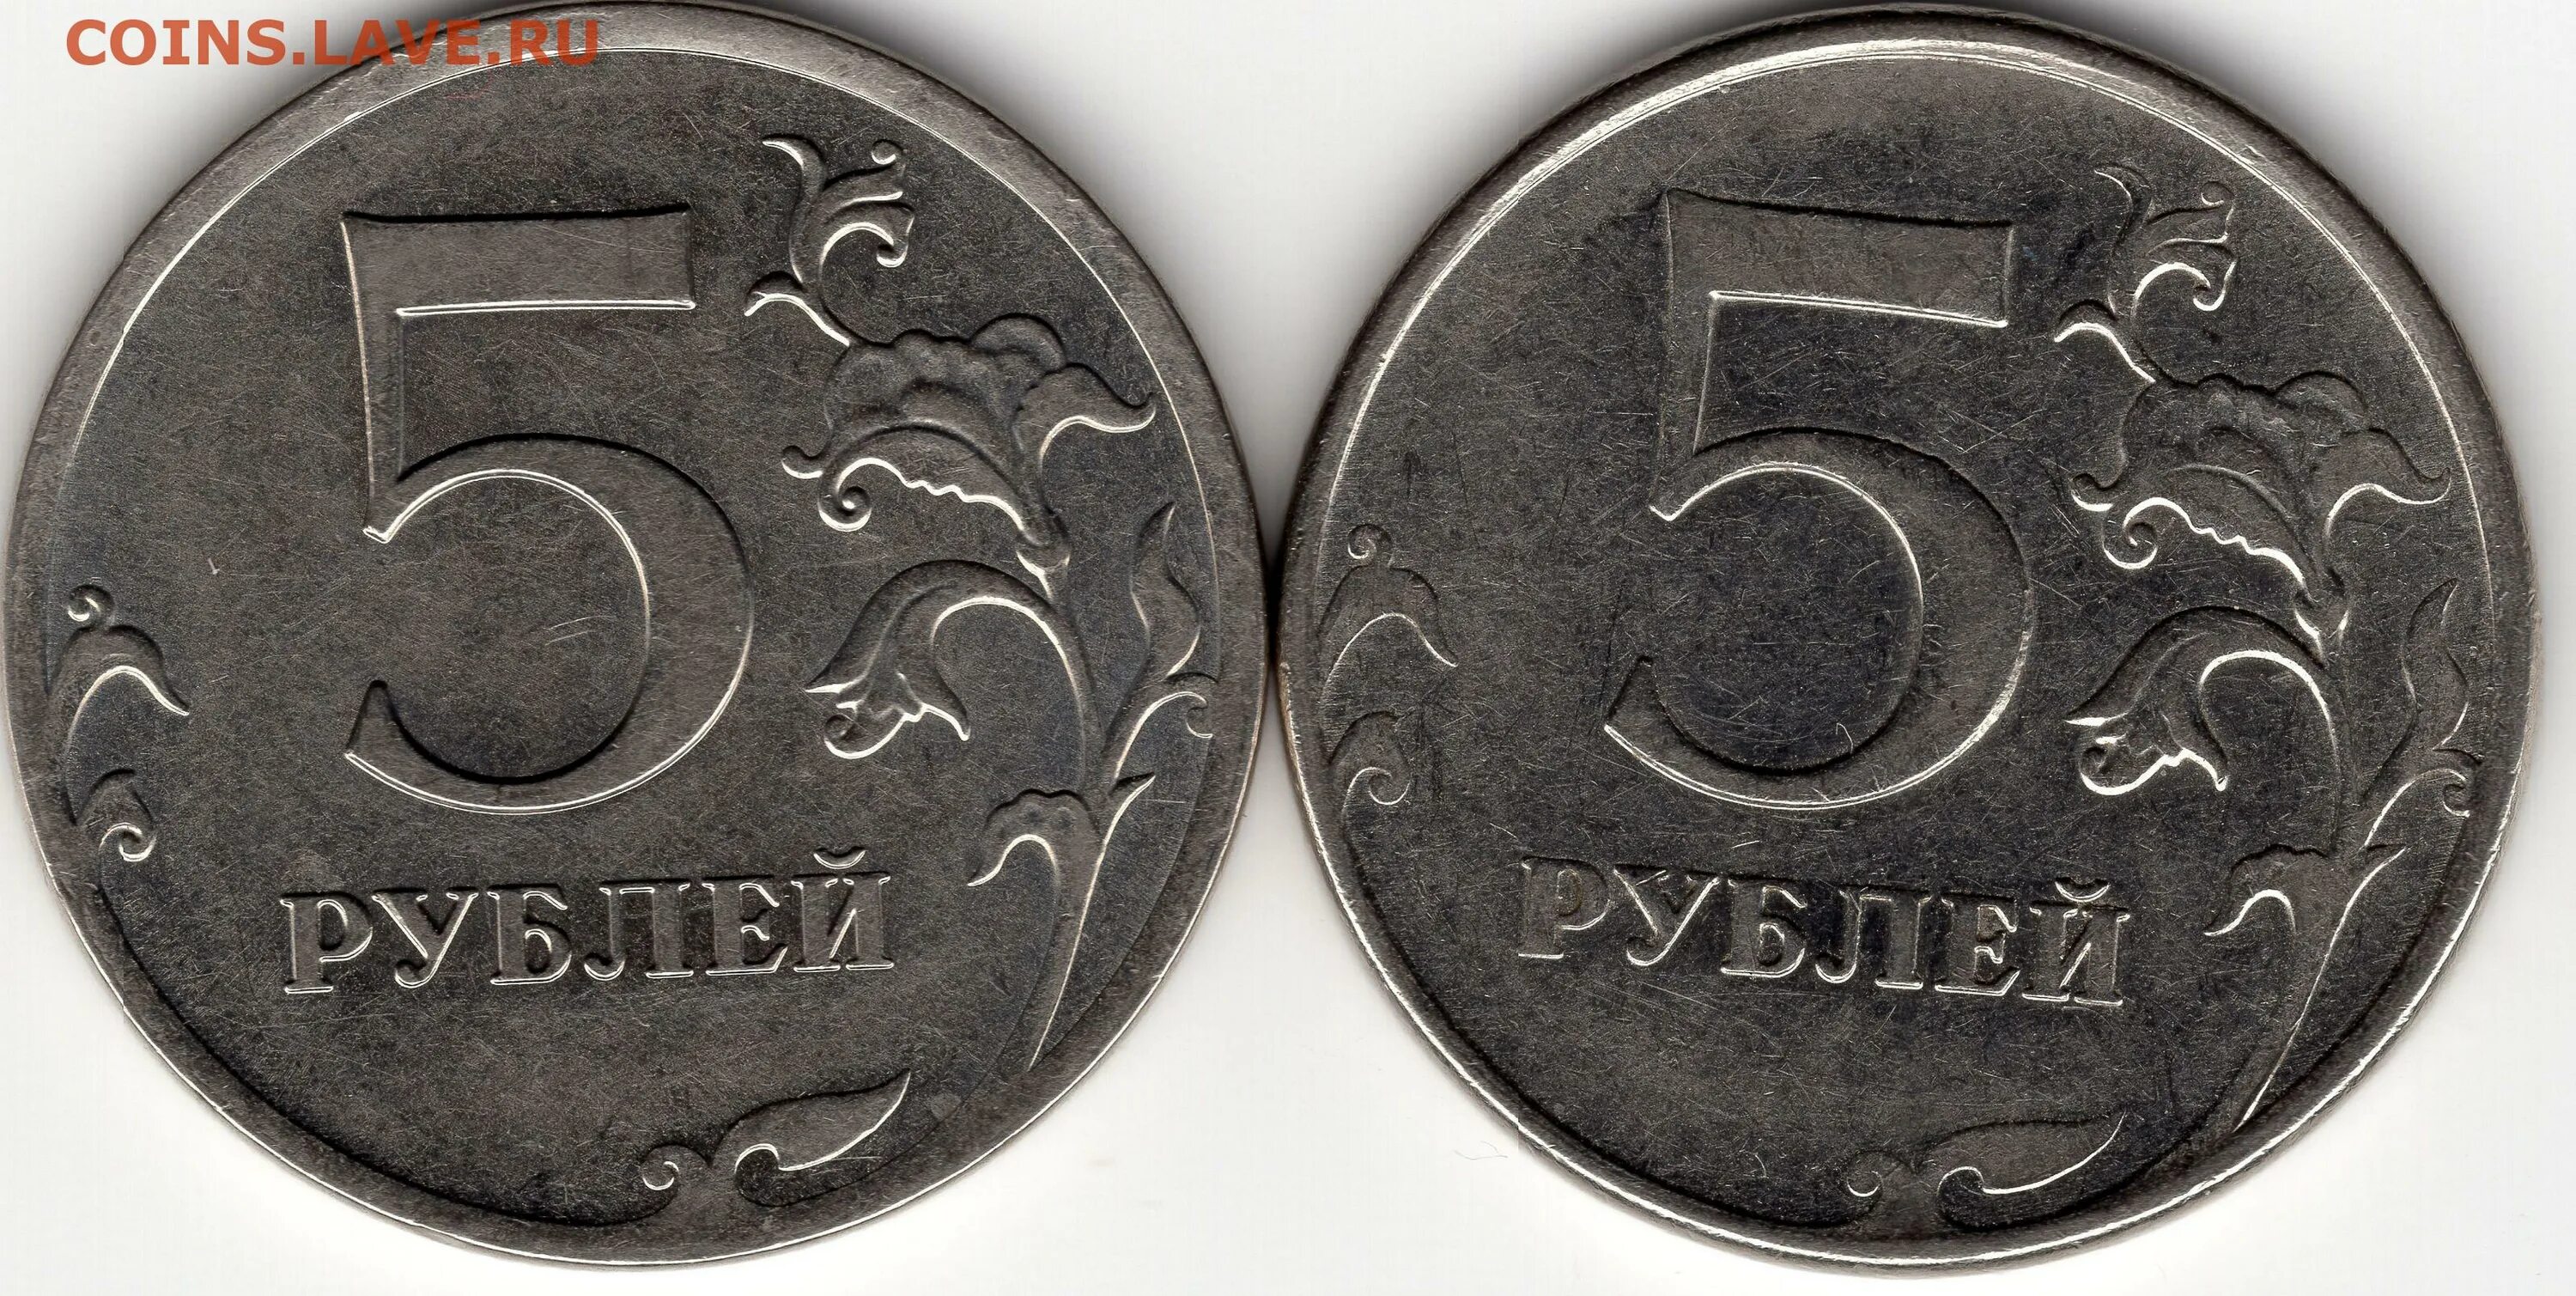 Лицевая сторона 5 рублей. Лицевая сторона монеты 5 рублей. 5 Руб 2012г. Лицевая сторона монеты 5 руб.